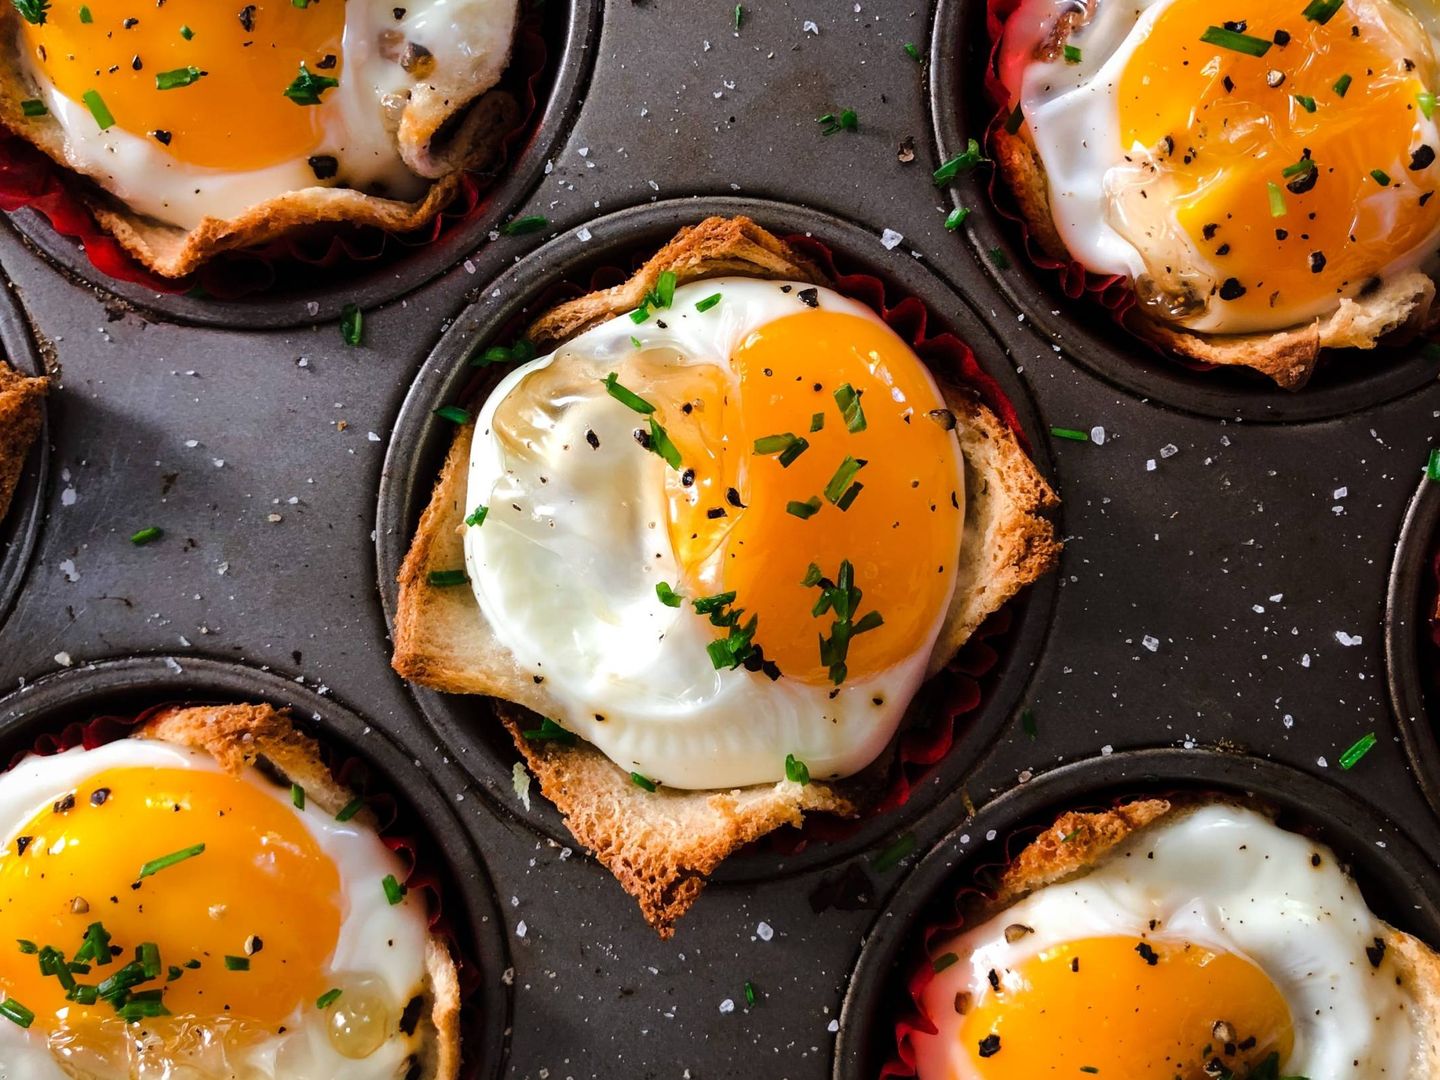  Incluir huevos en el desayuno evita picoteos innecesarios o atracones (Unsplash)